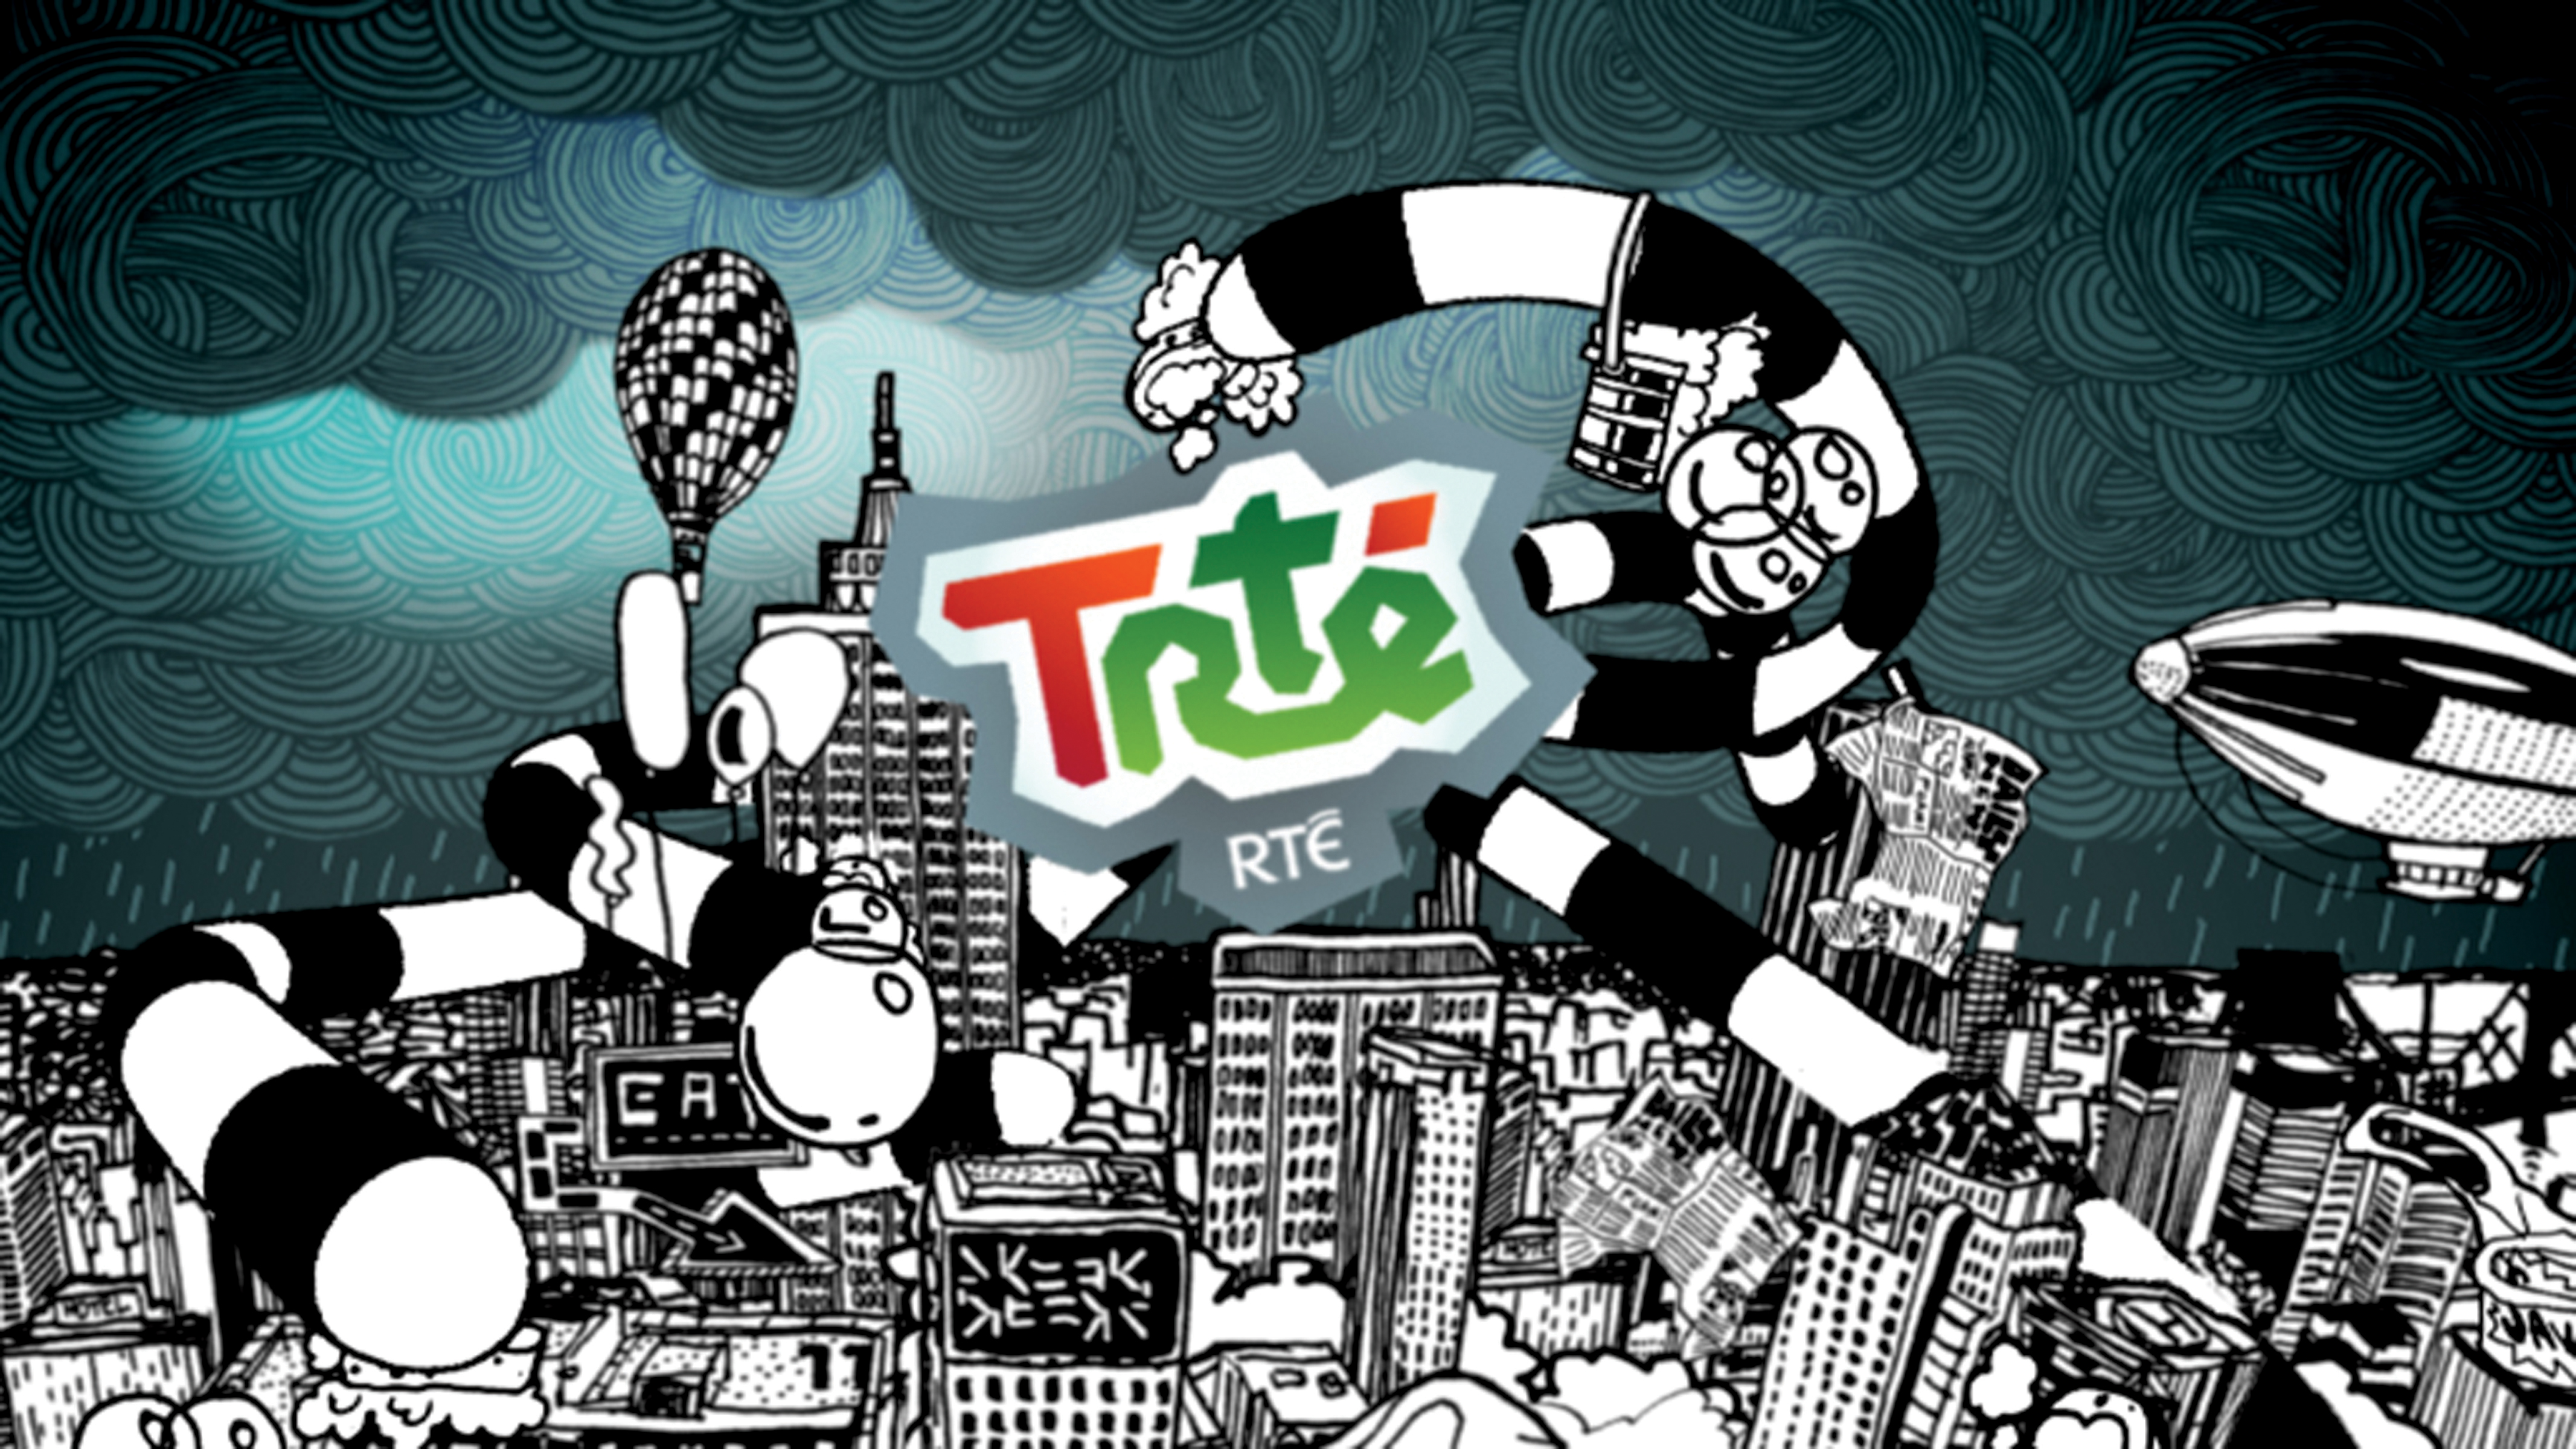 Cover image: TRTÉ TV Channel Branding (RTÉ)